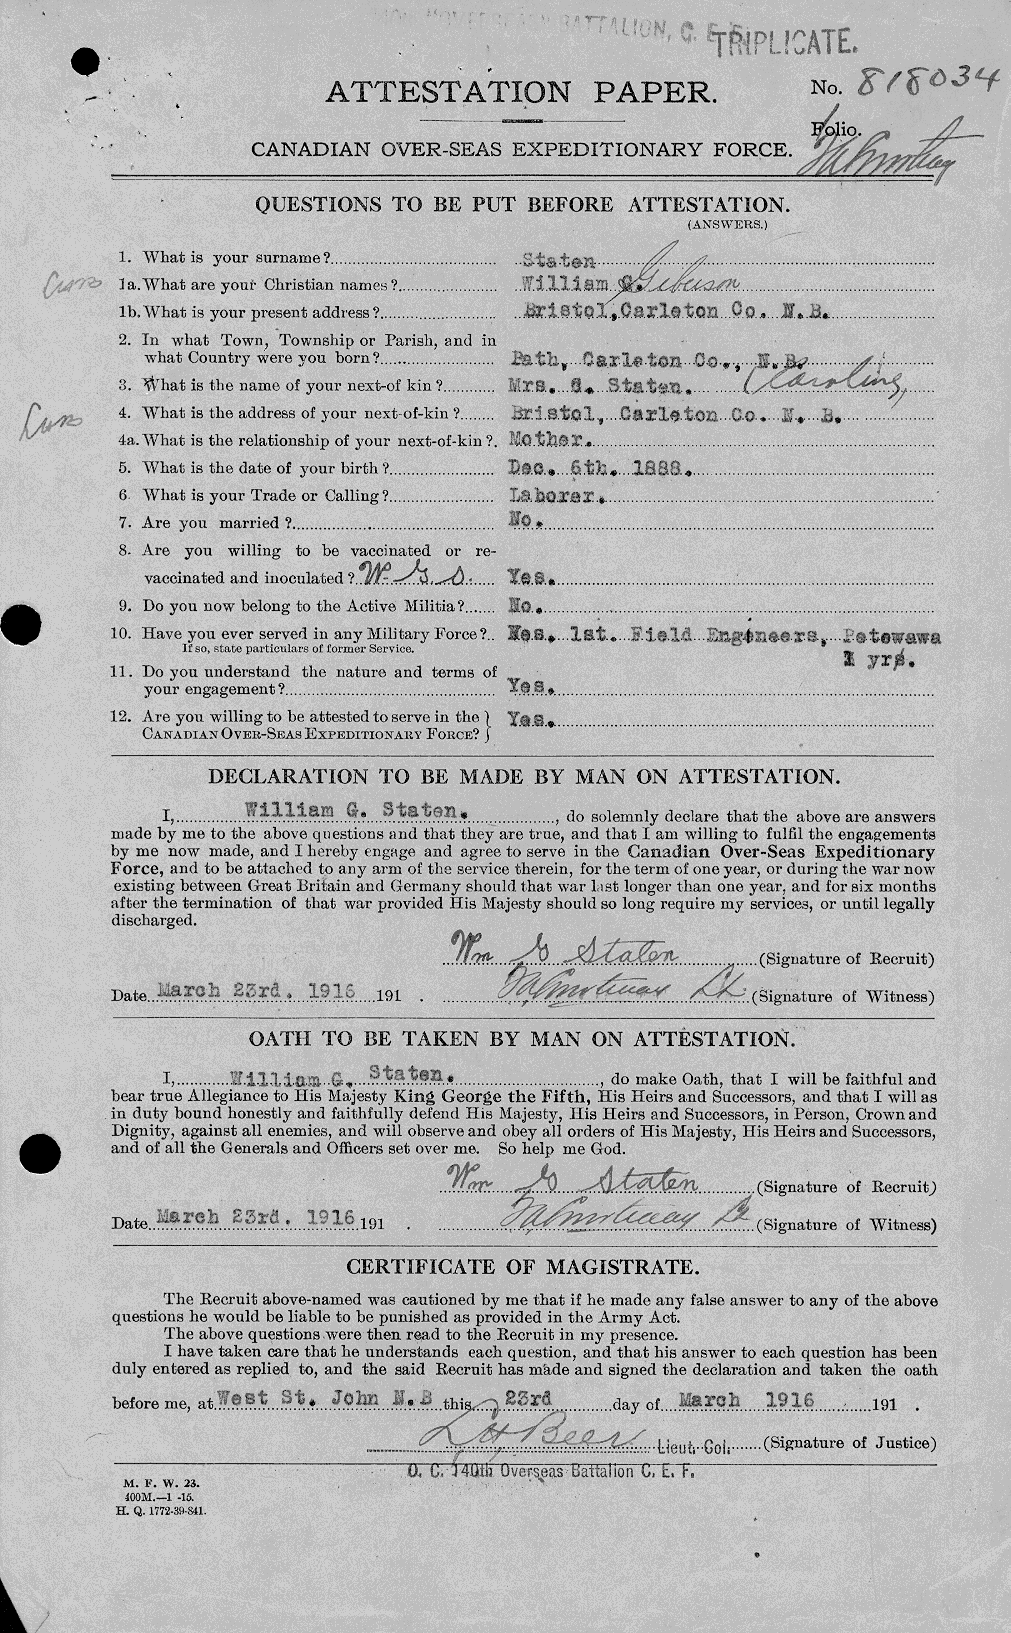 Dossiers du Personnel de la Première Guerre mondiale - CEC 116130a